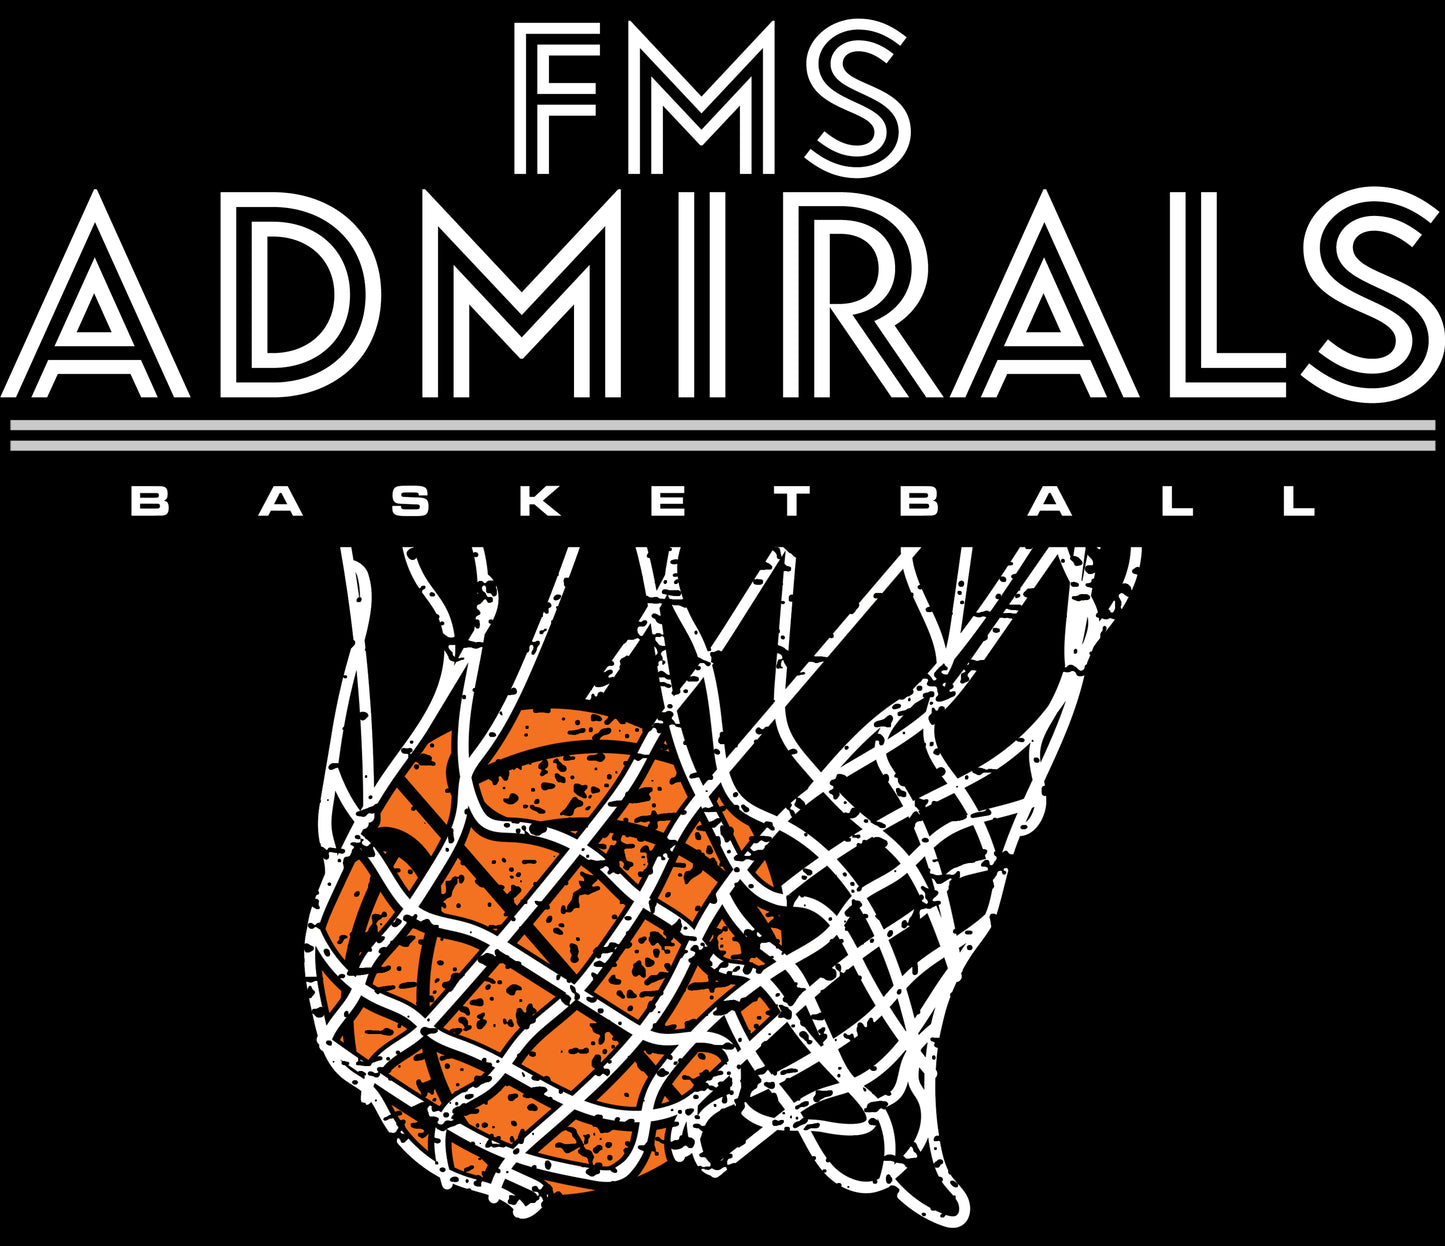 FMS Admiral Basketball